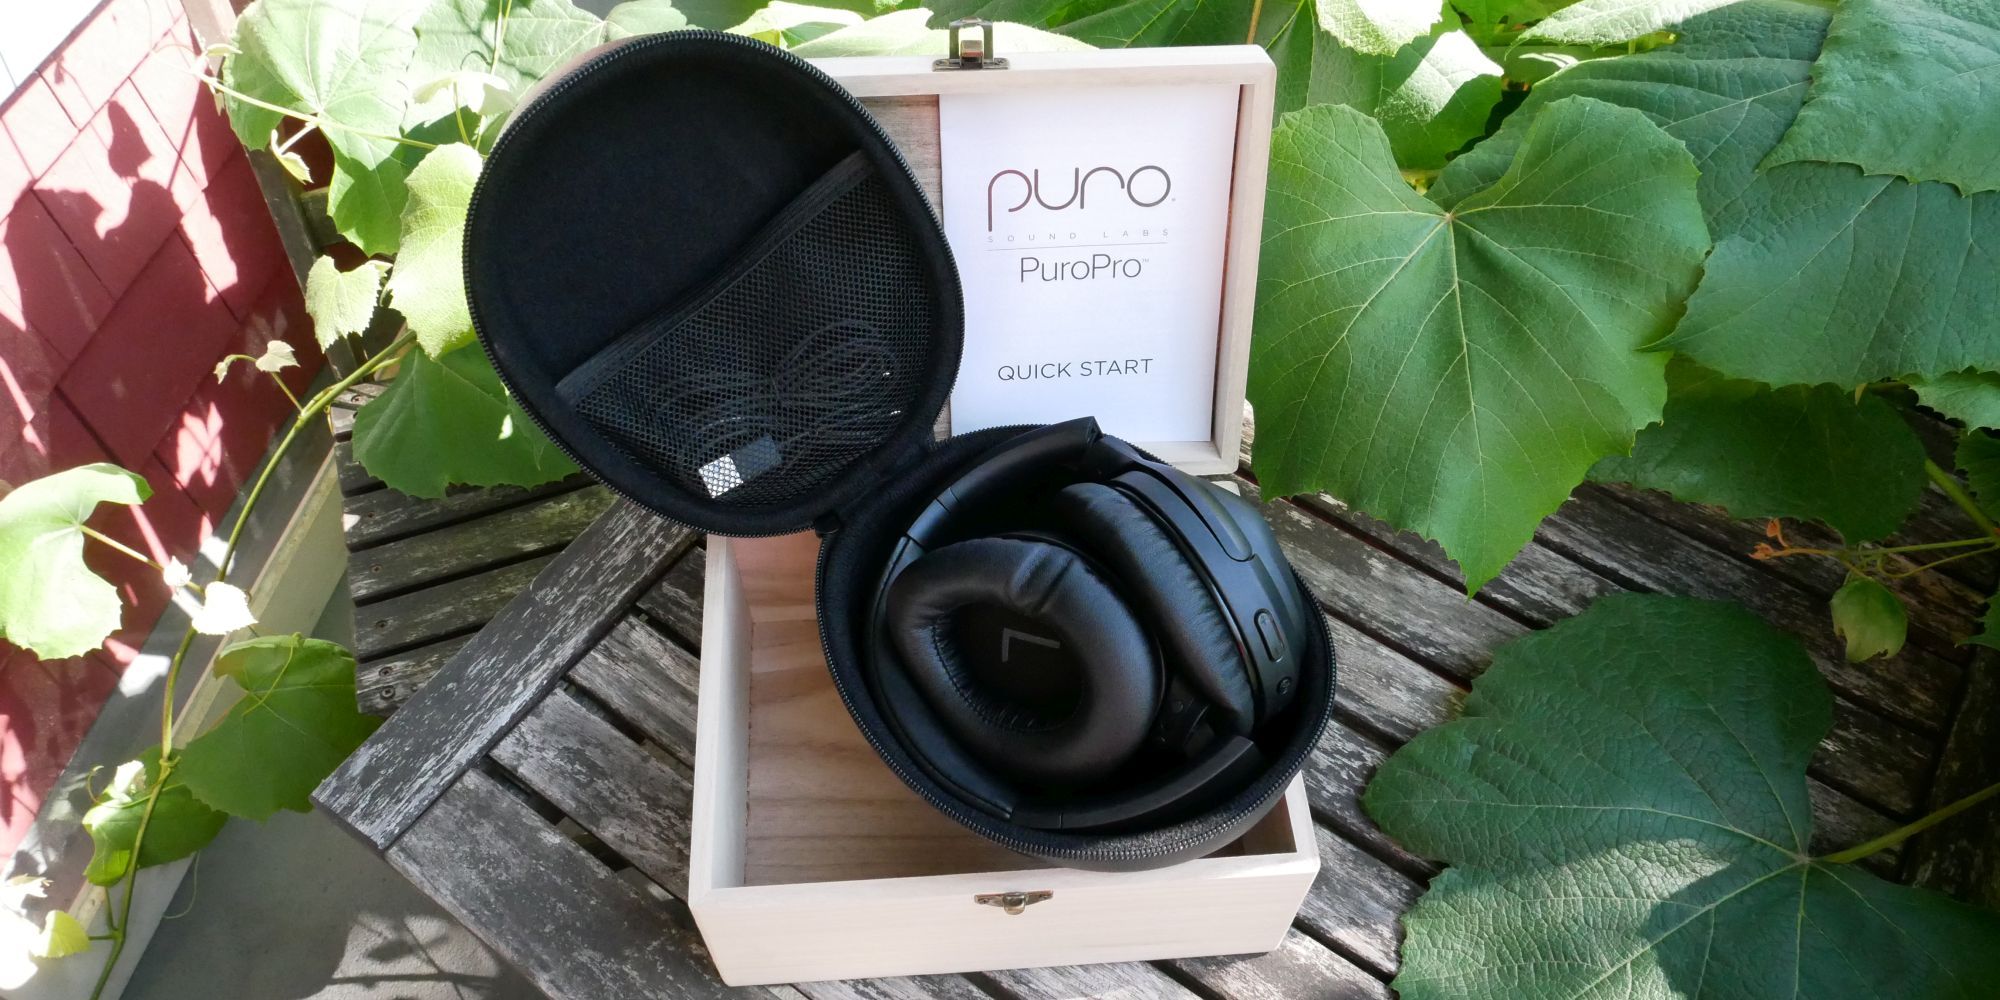 PuroPro02 - Le cuffie PuroPro Wireless ANC proteggeranno il tuo udito